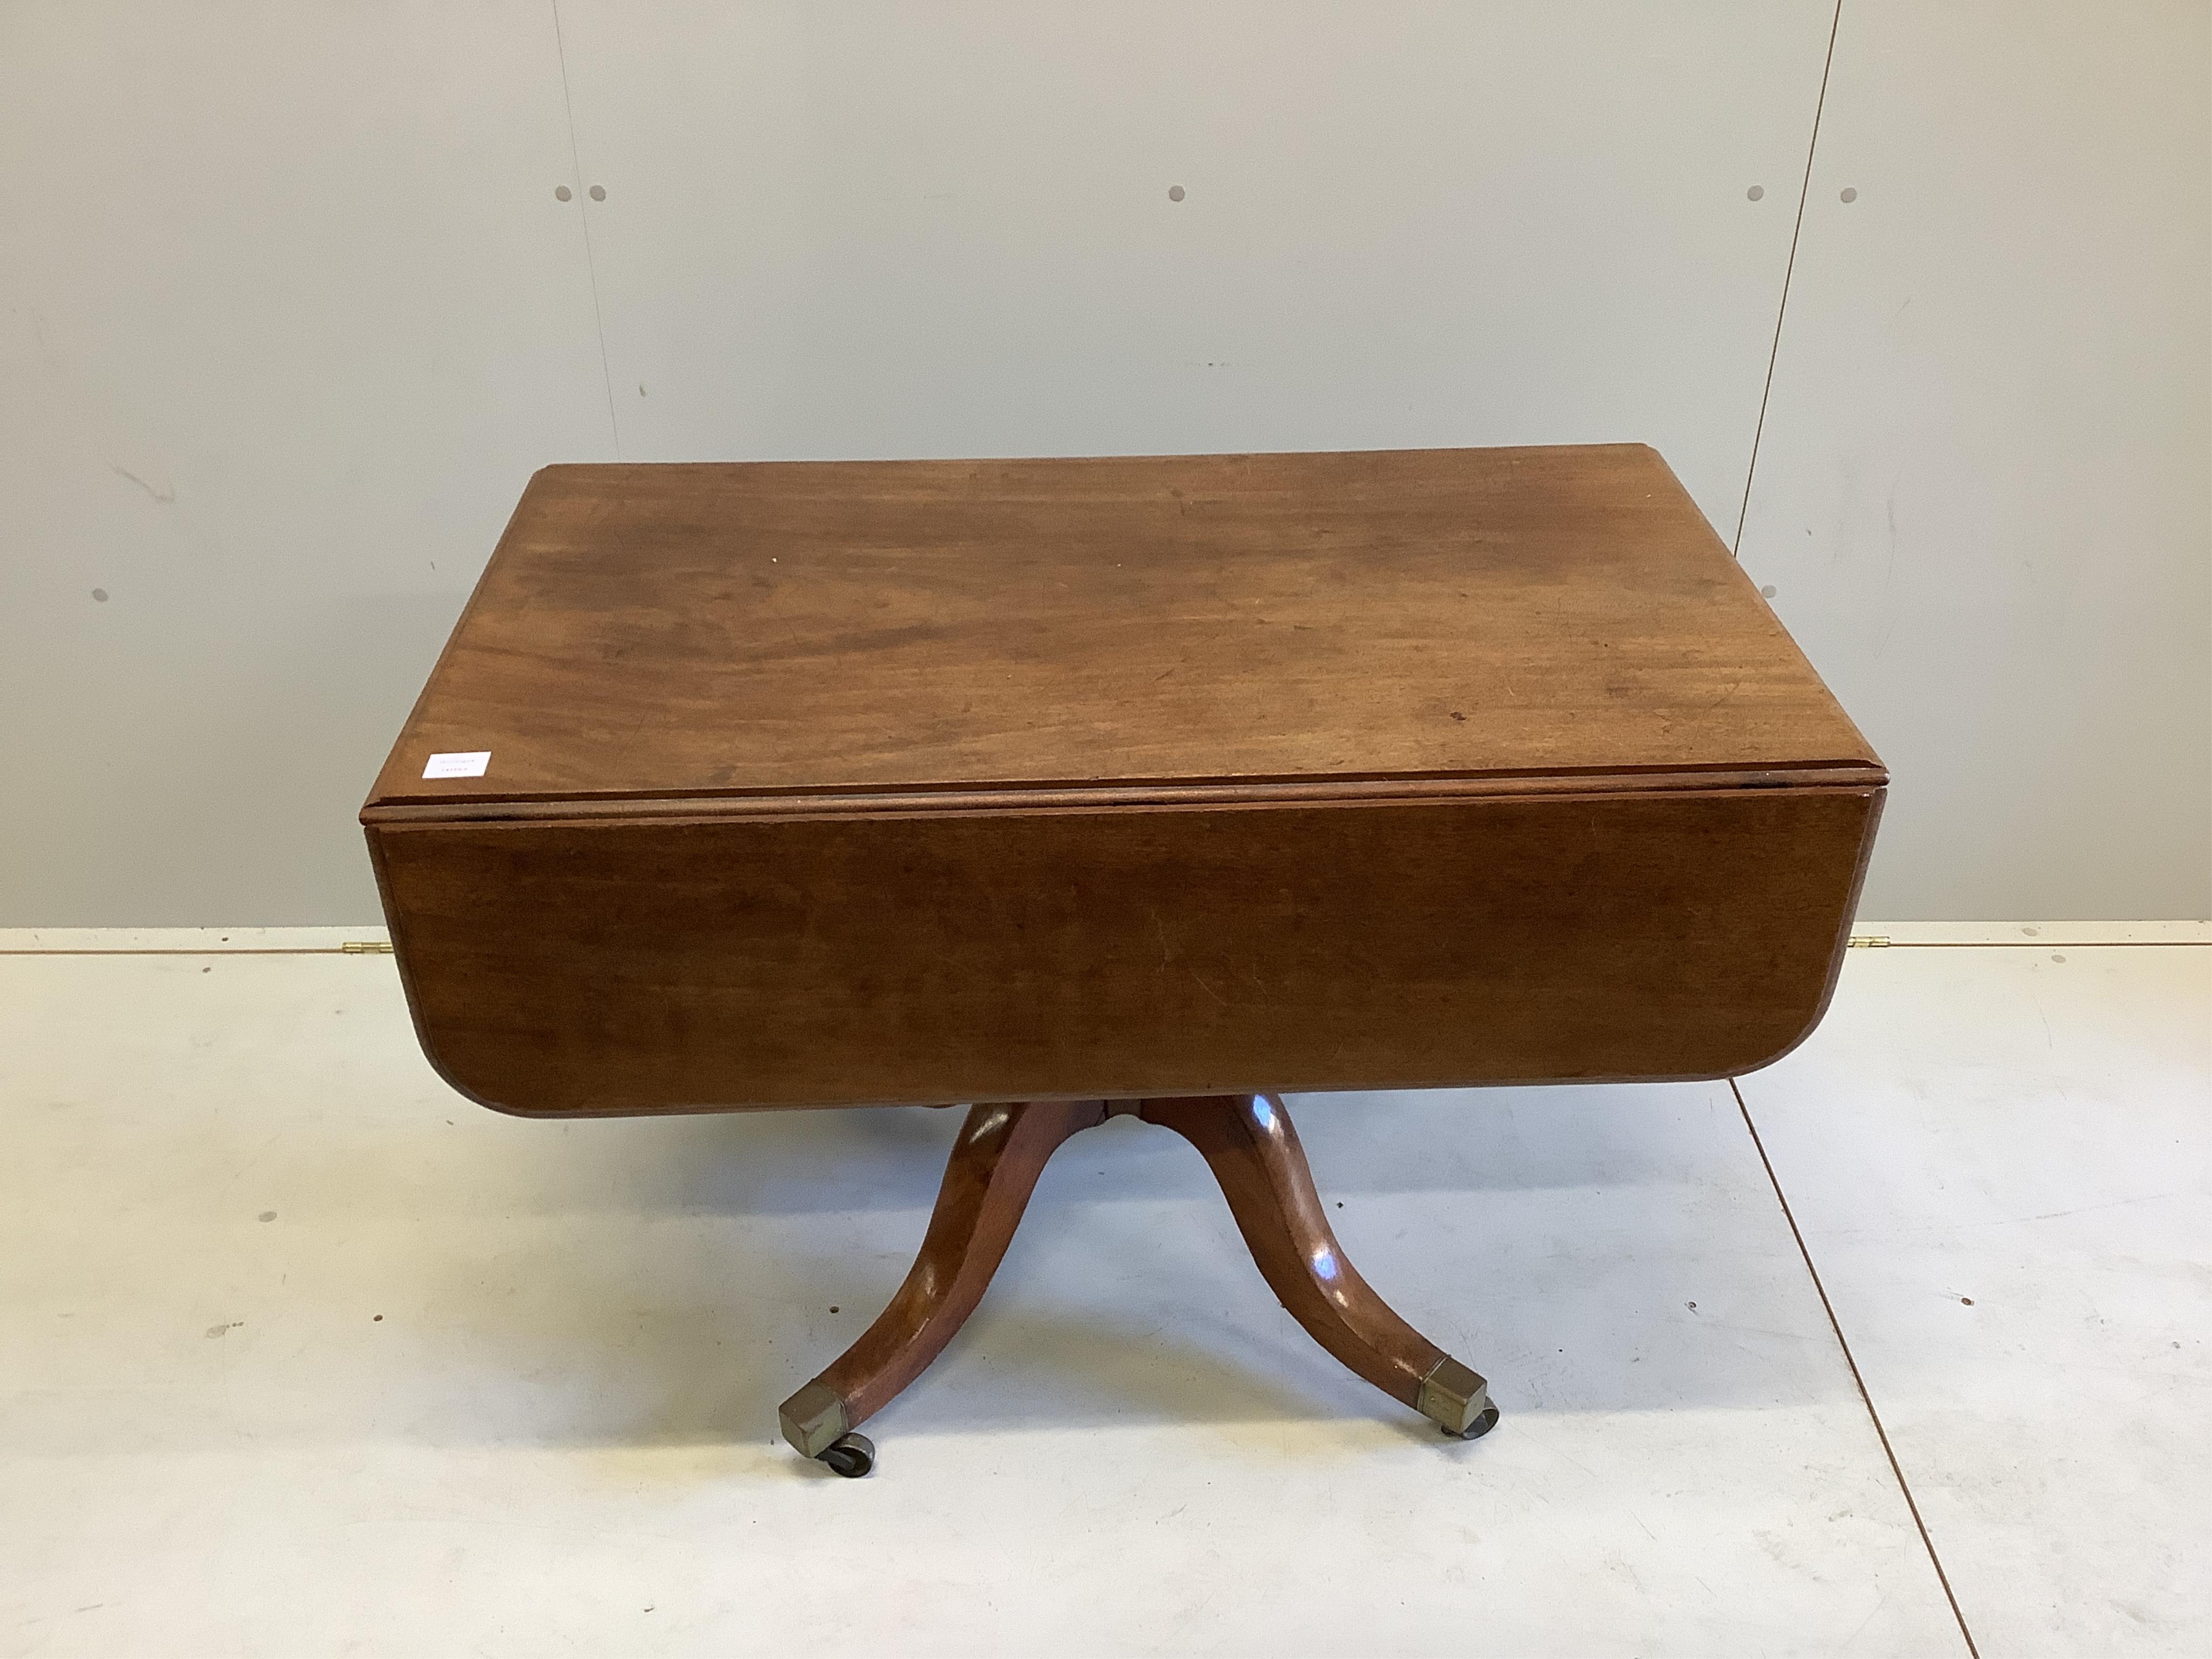 A Regency mahogany Pembroke breakfast table, width 105cm, depth 62cm, height 72cm